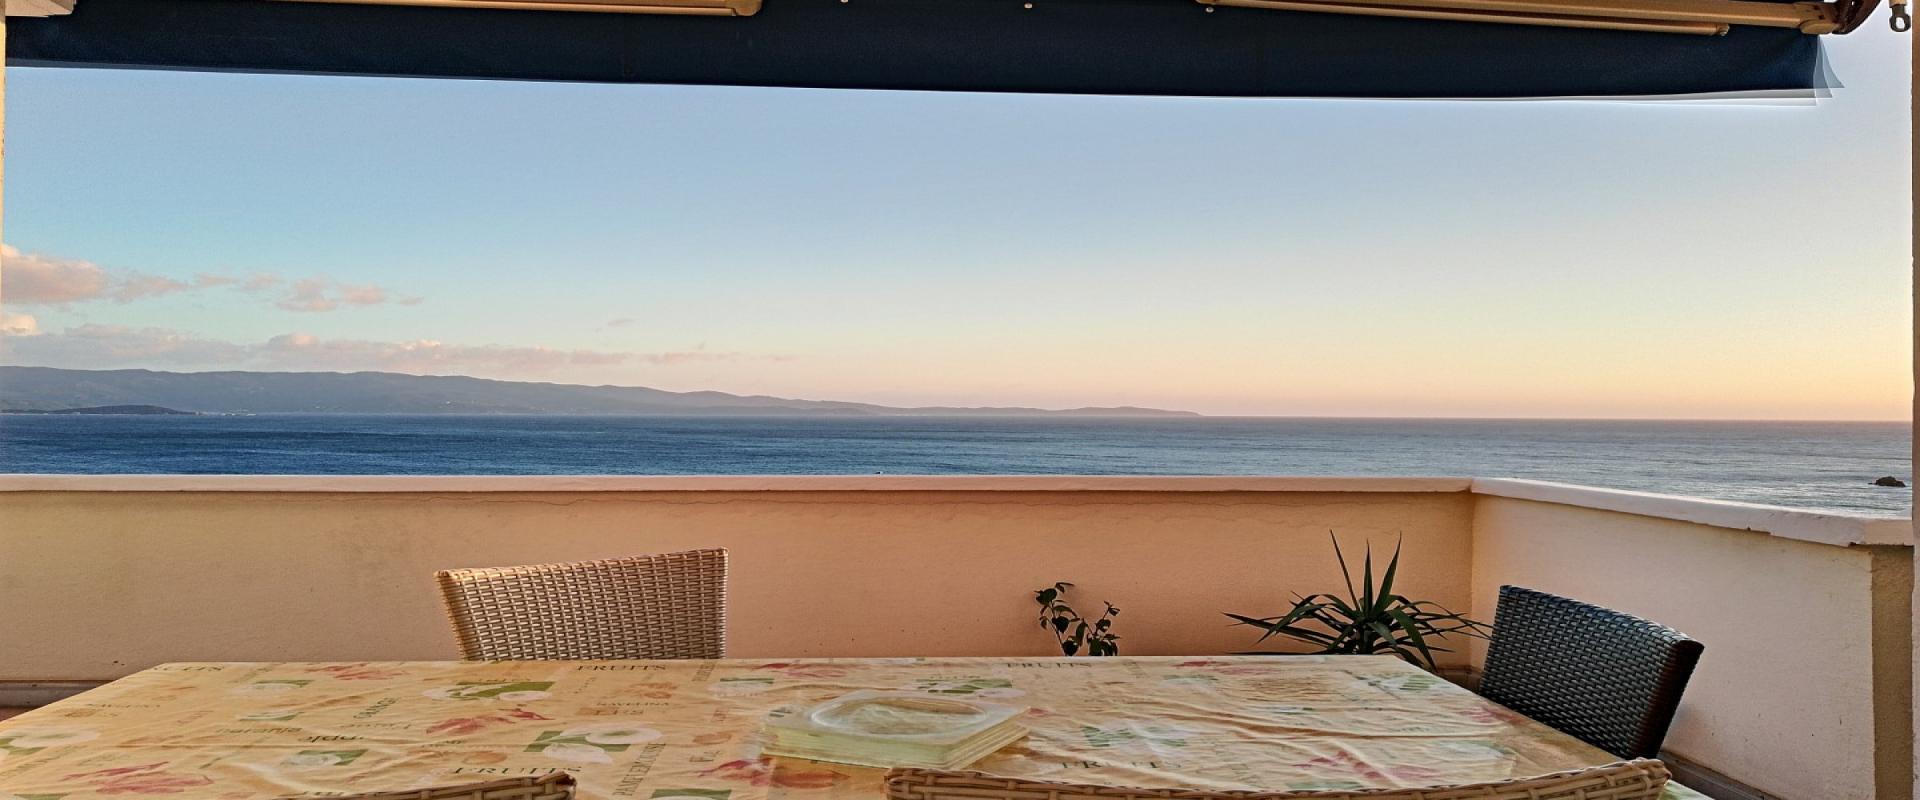 En Corse, à Ajaccio, un splendide f2/3 vue mer panoramique avec 40m² de terrasse